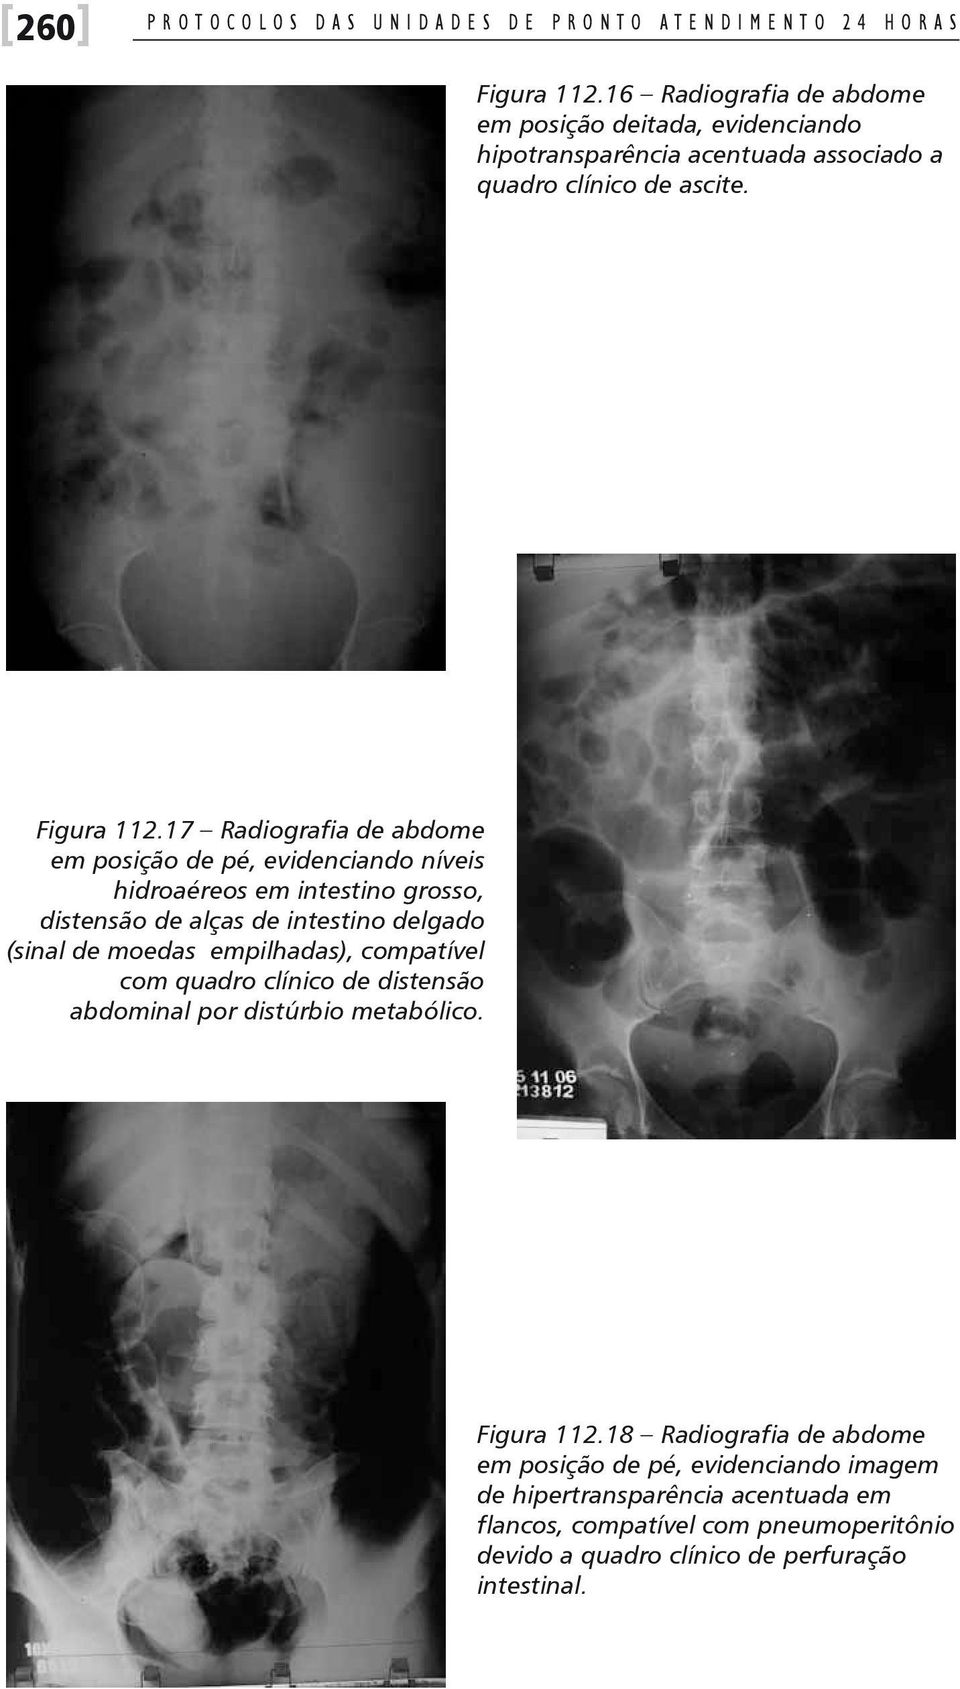 17 Radiografia de abdome em posição de pé, evidenciando níveis hidroaéreos em intestino grosso, distensão de alças de intestino delgado (sinal de moedas empilhadas),